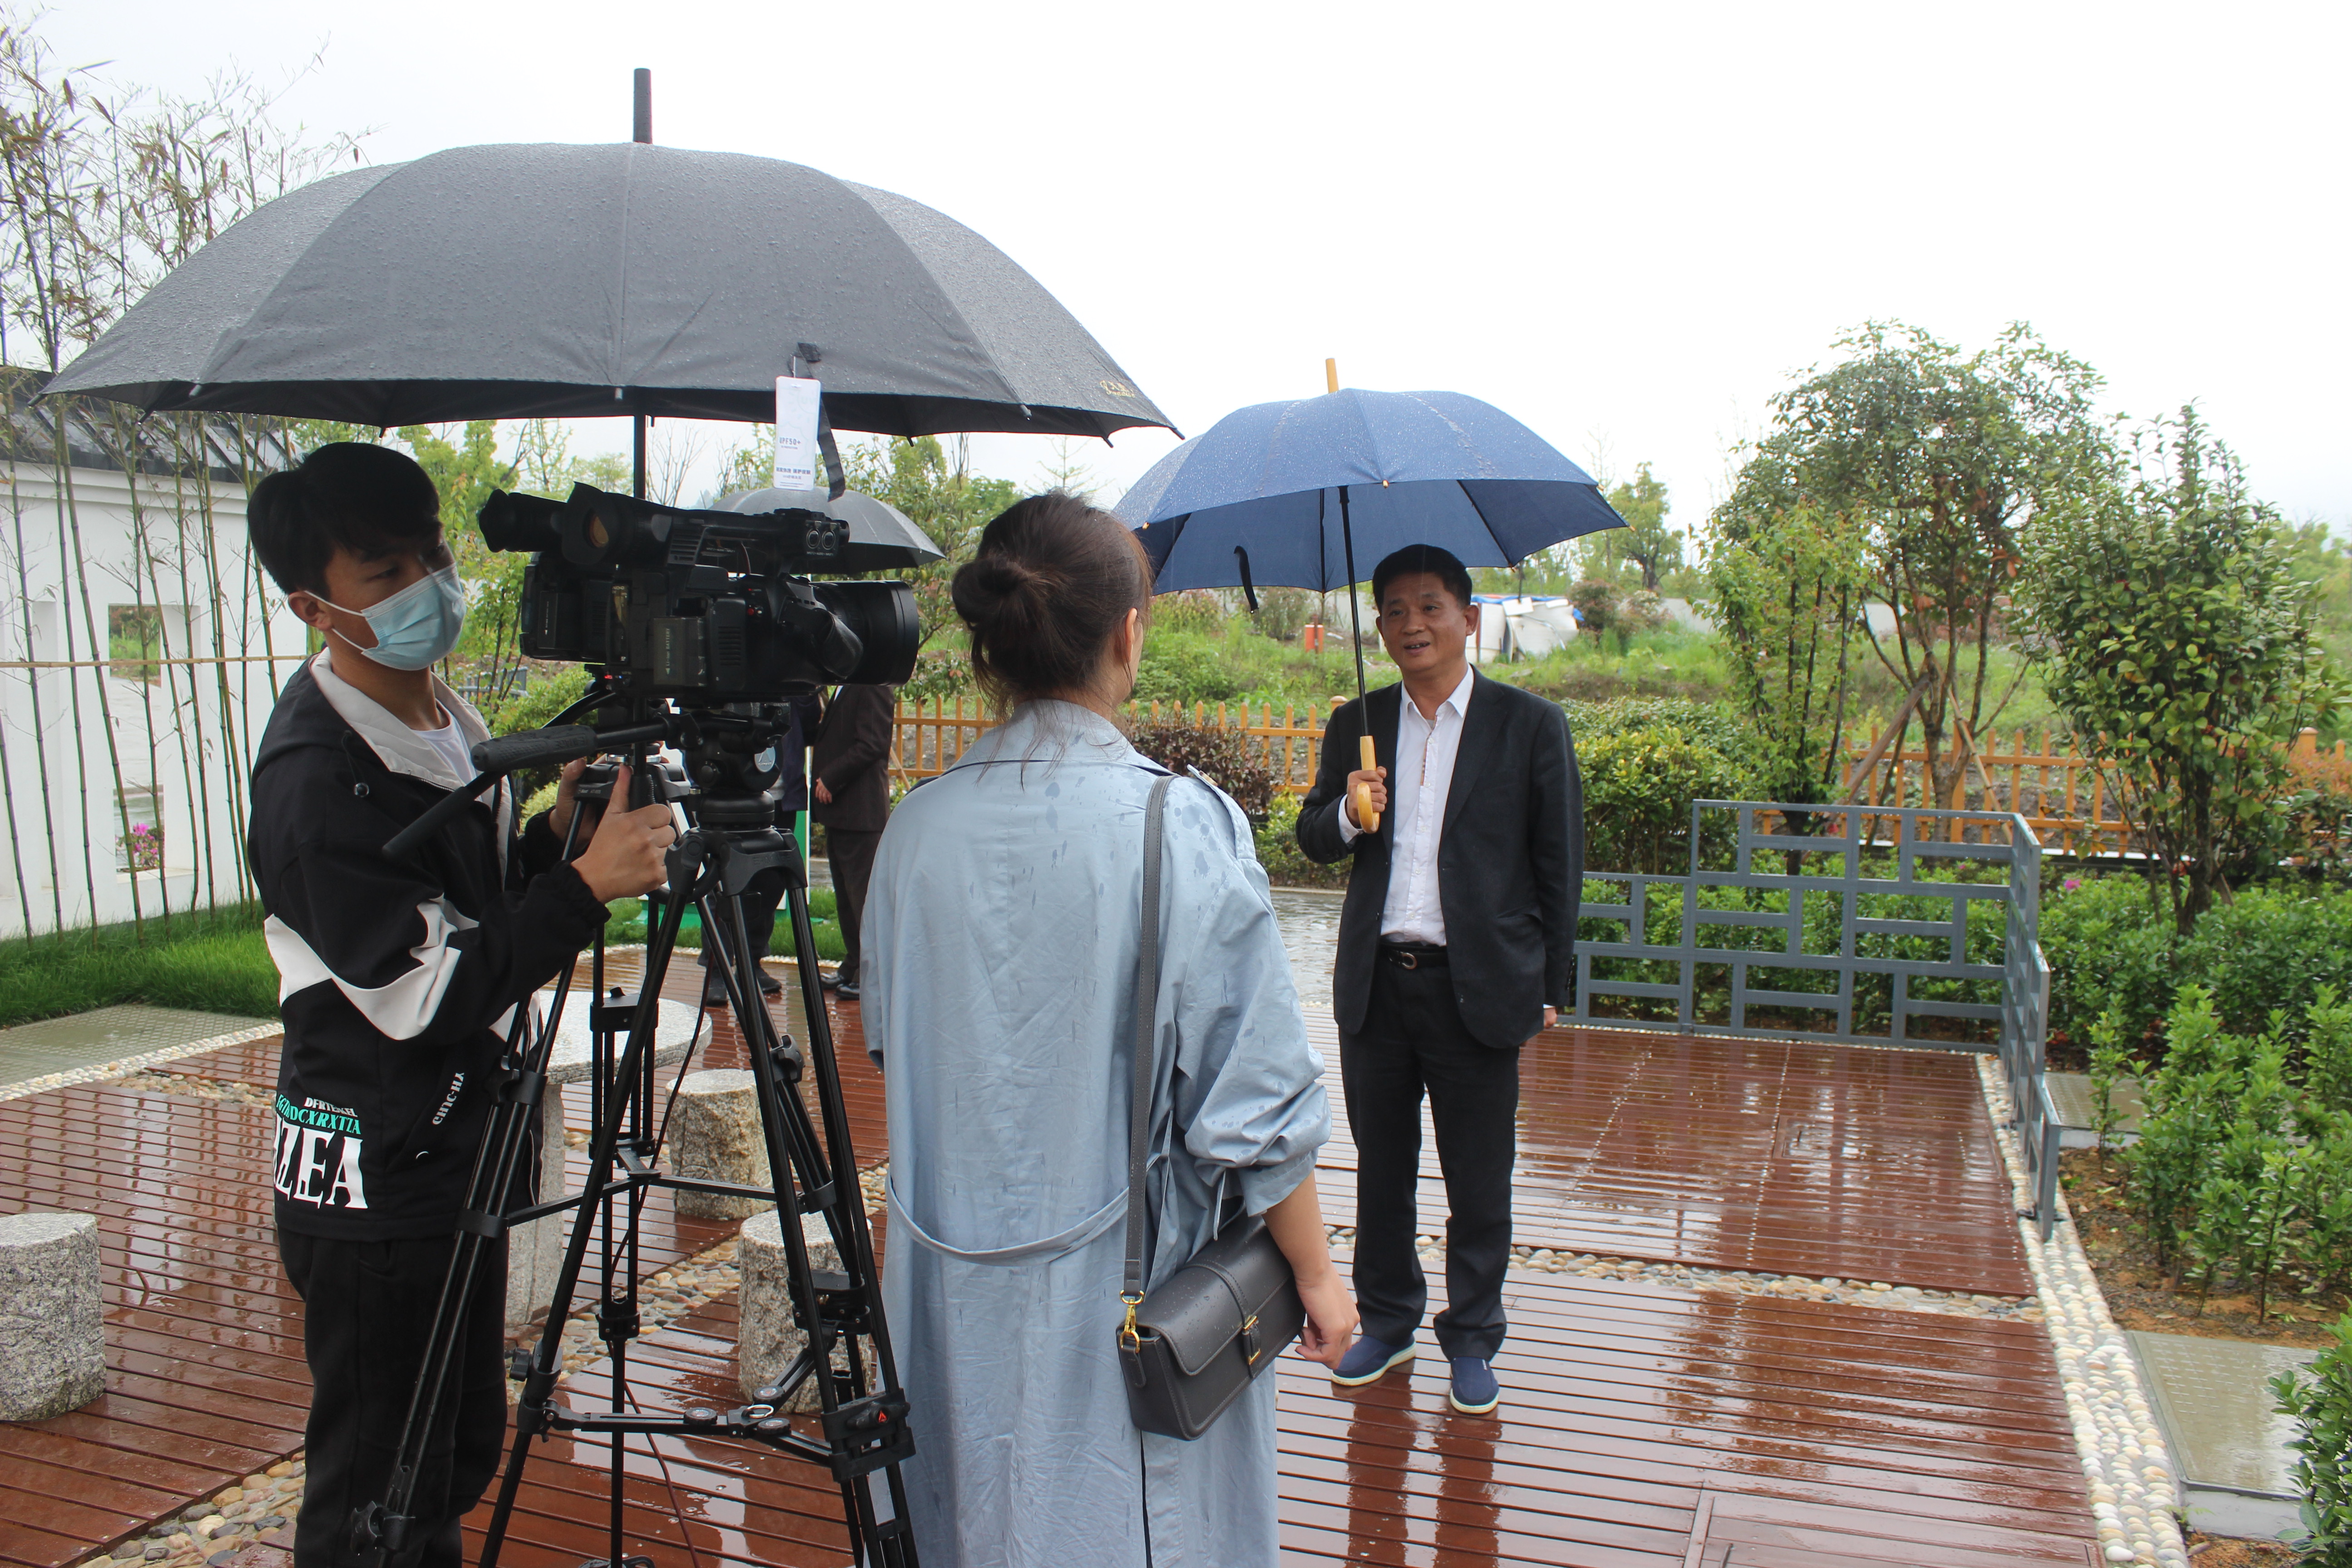 2021年4月12日，杭州市建委党组成员、二级巡视员叶青在金沙js9999777湖埠村农村生活污水治理设施现场接受央视《大国匠心》栏目专访。